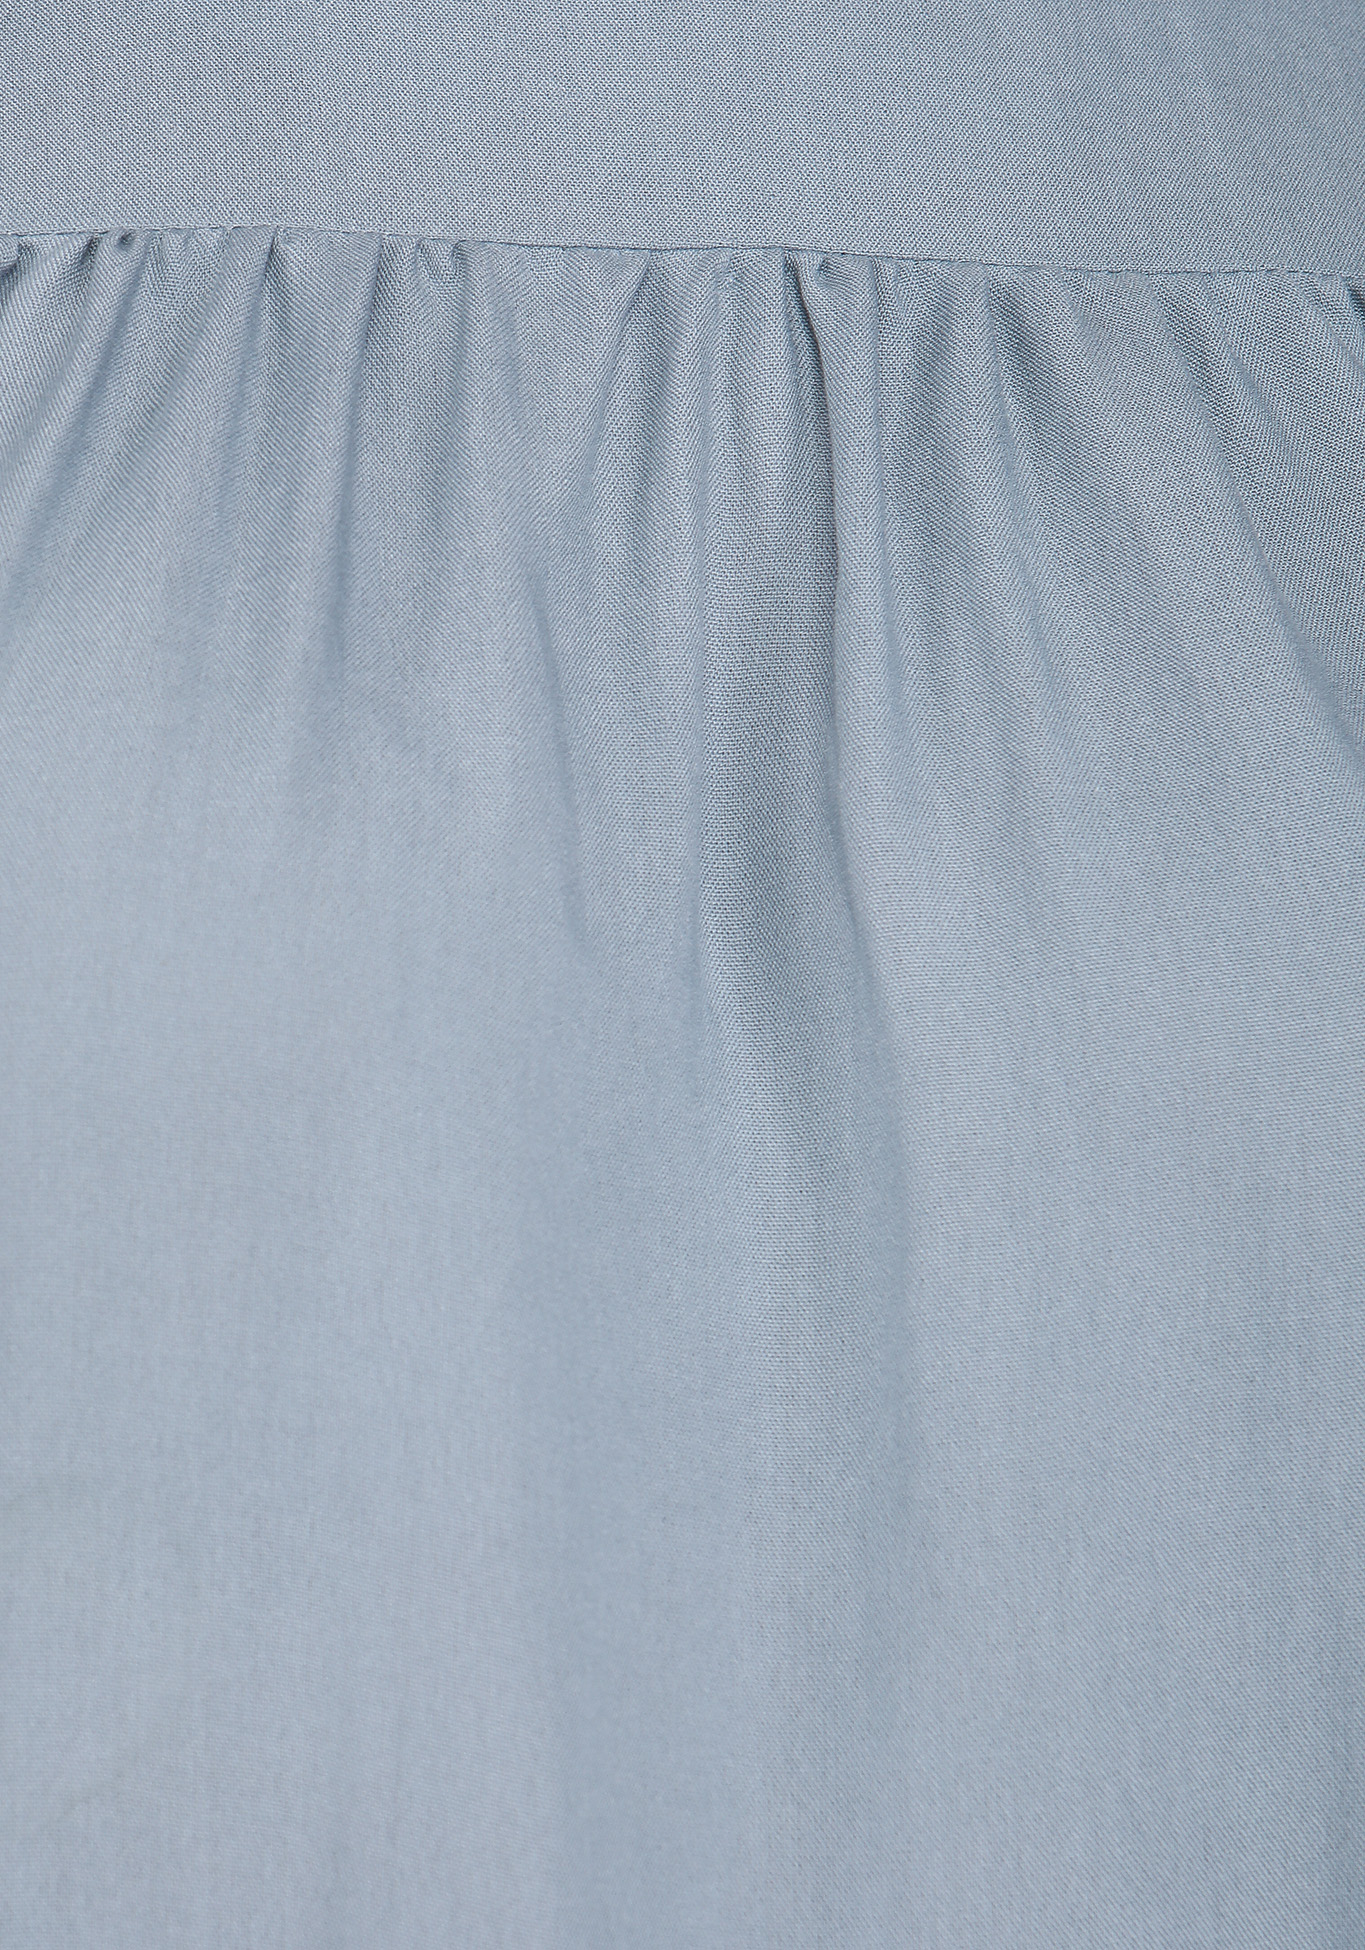 Платье ярусное с круглым воротом Polina Romanova, размер 50, цвет пудровый - фото 6